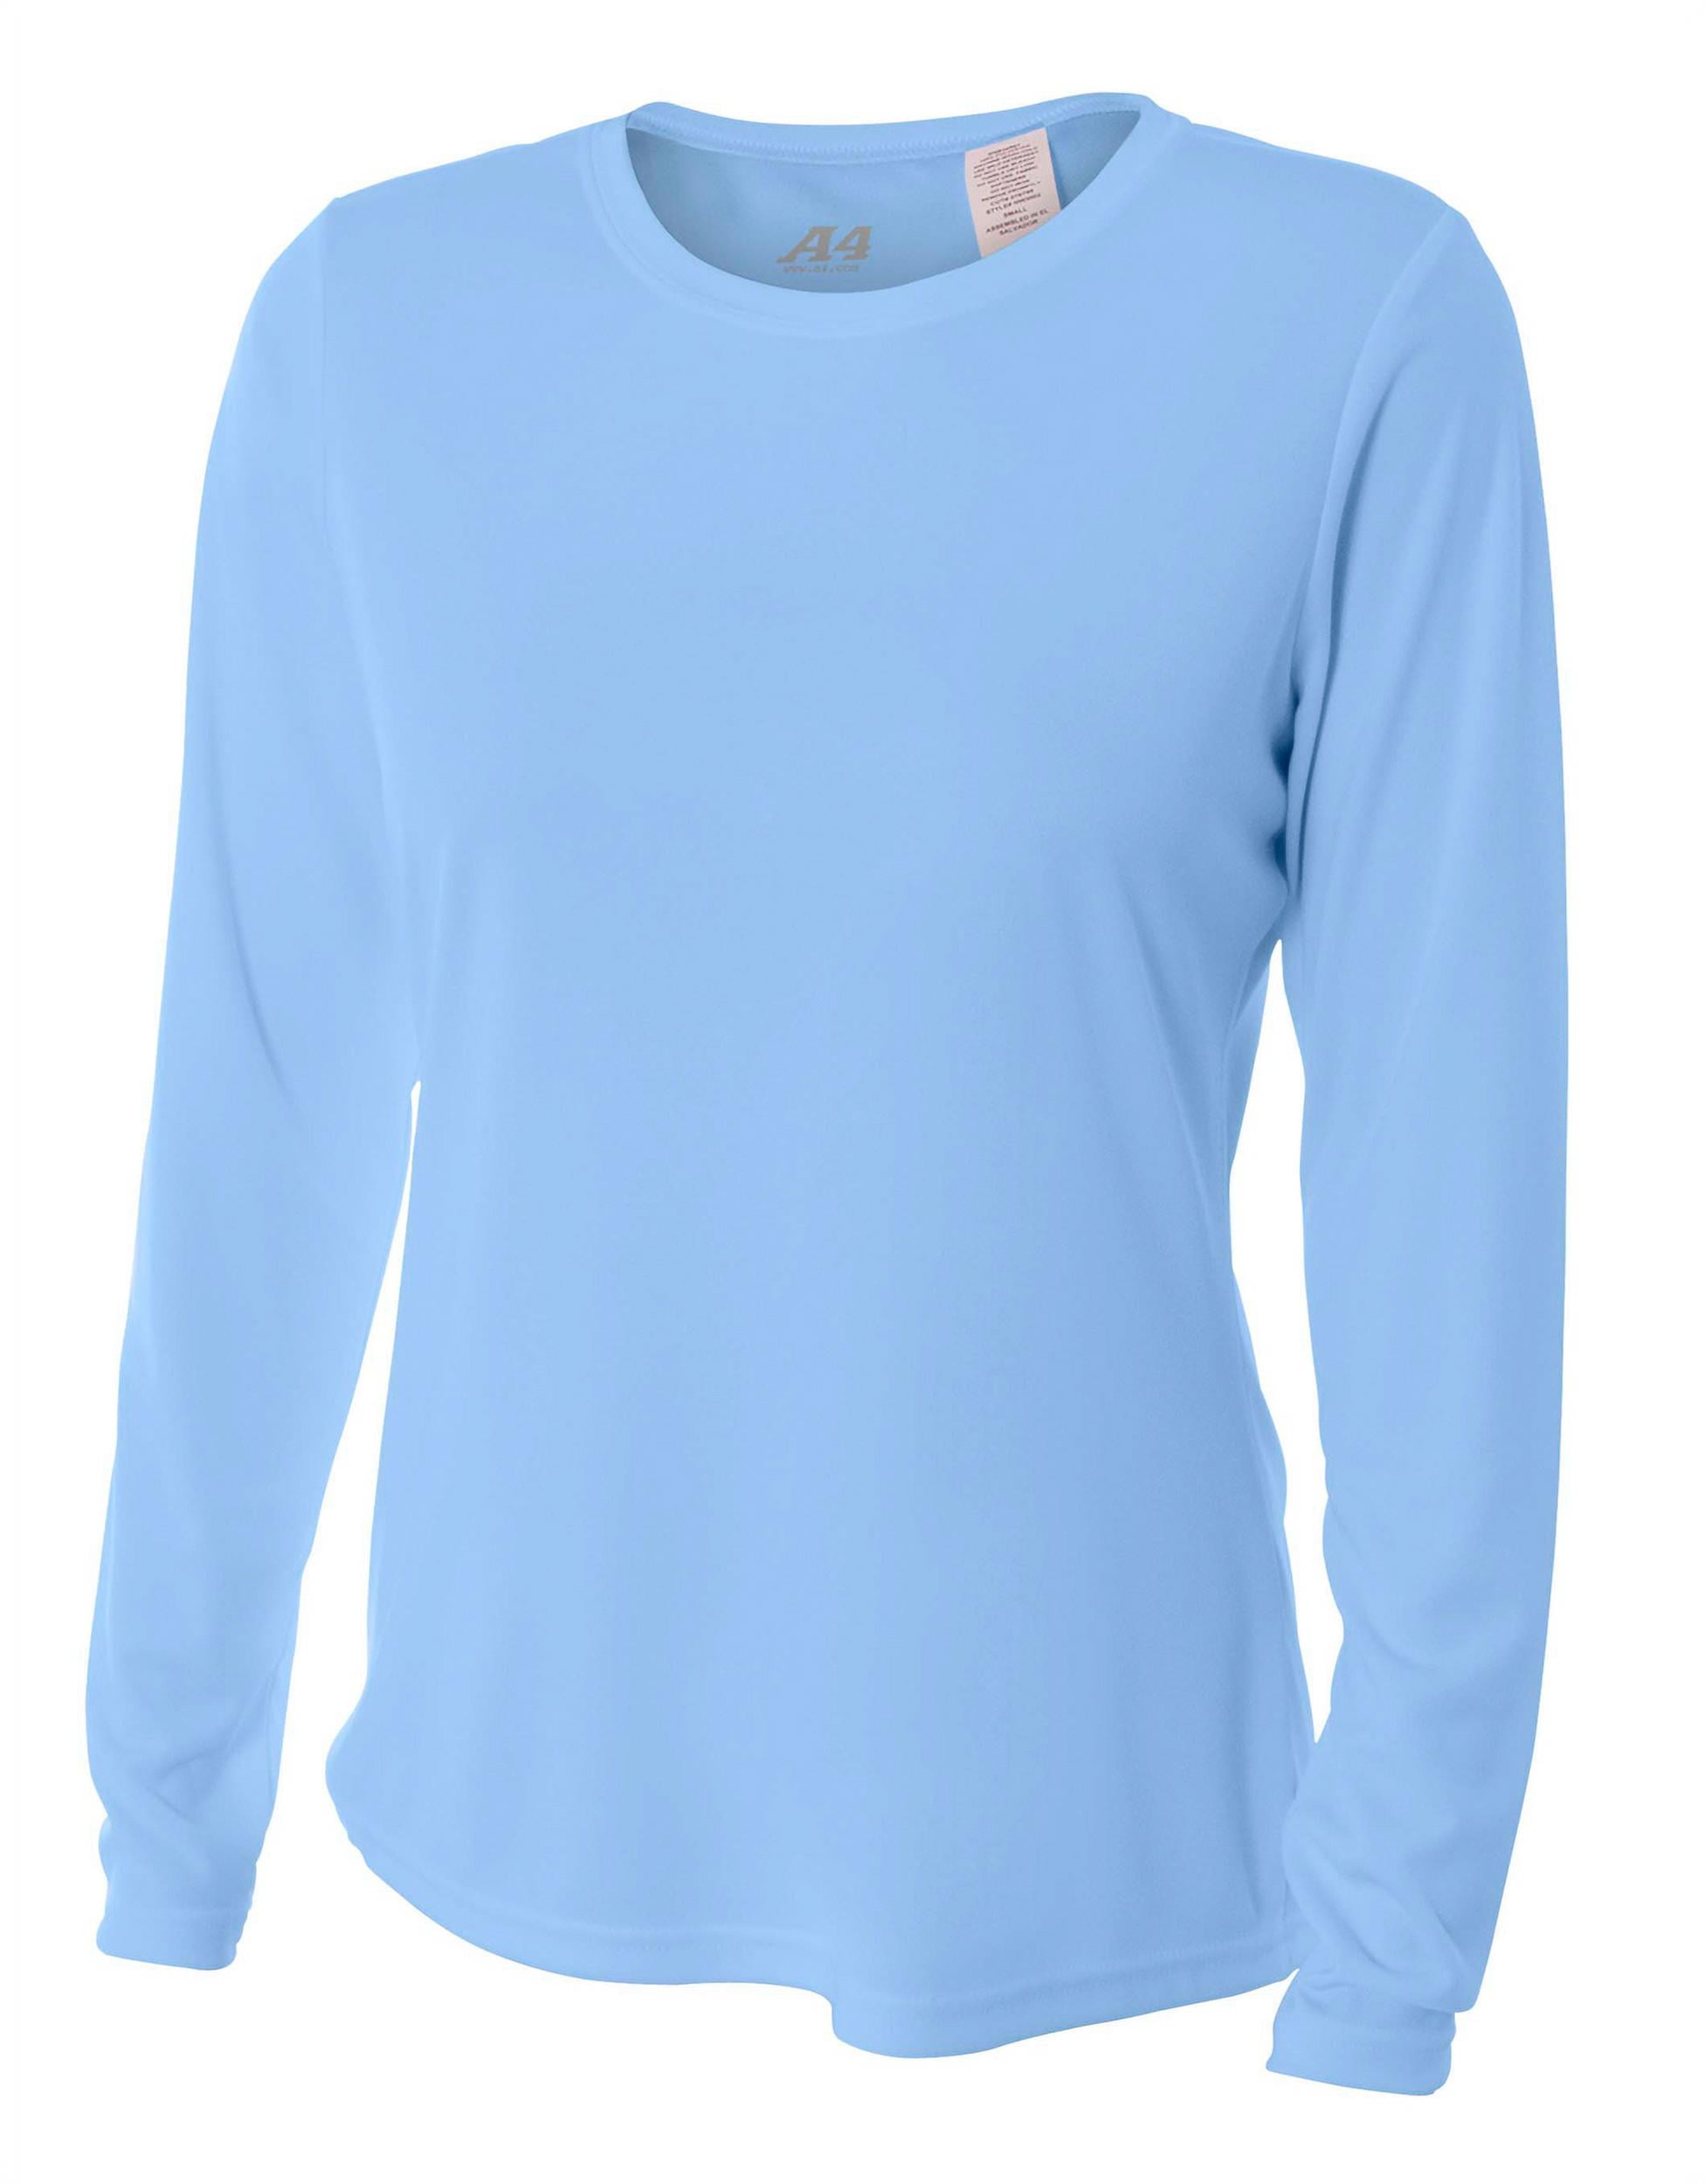 A4 Cooling Performance Crew Sleeve T-Shirt, Light Blue, X-Small - Walmart.com